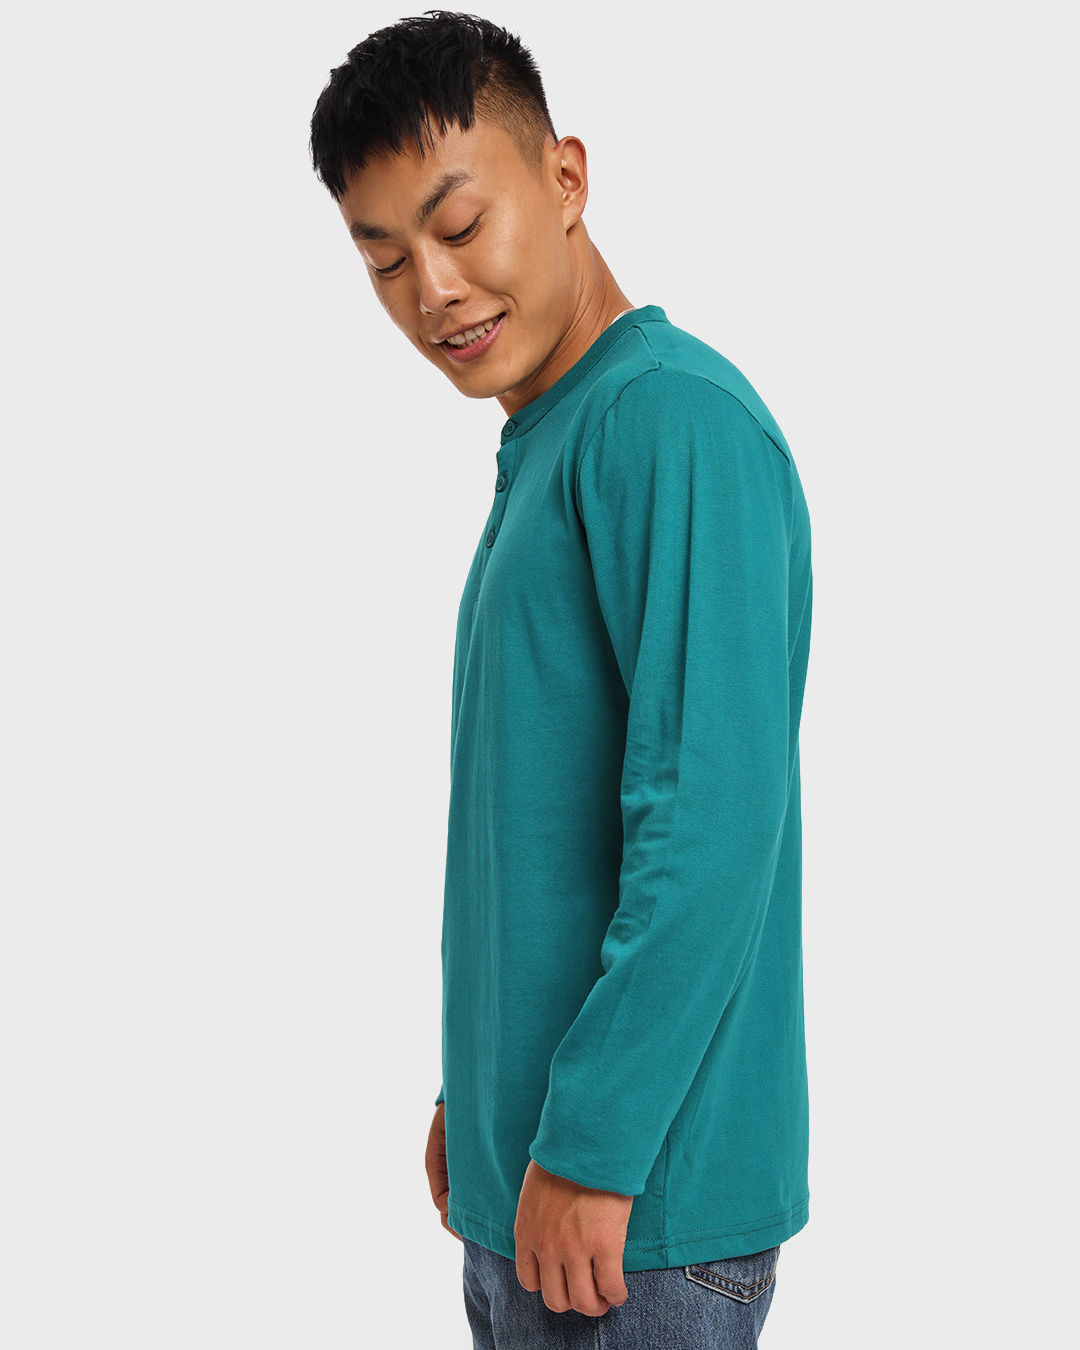 Shop Men's Green Henley T-shirt-Back